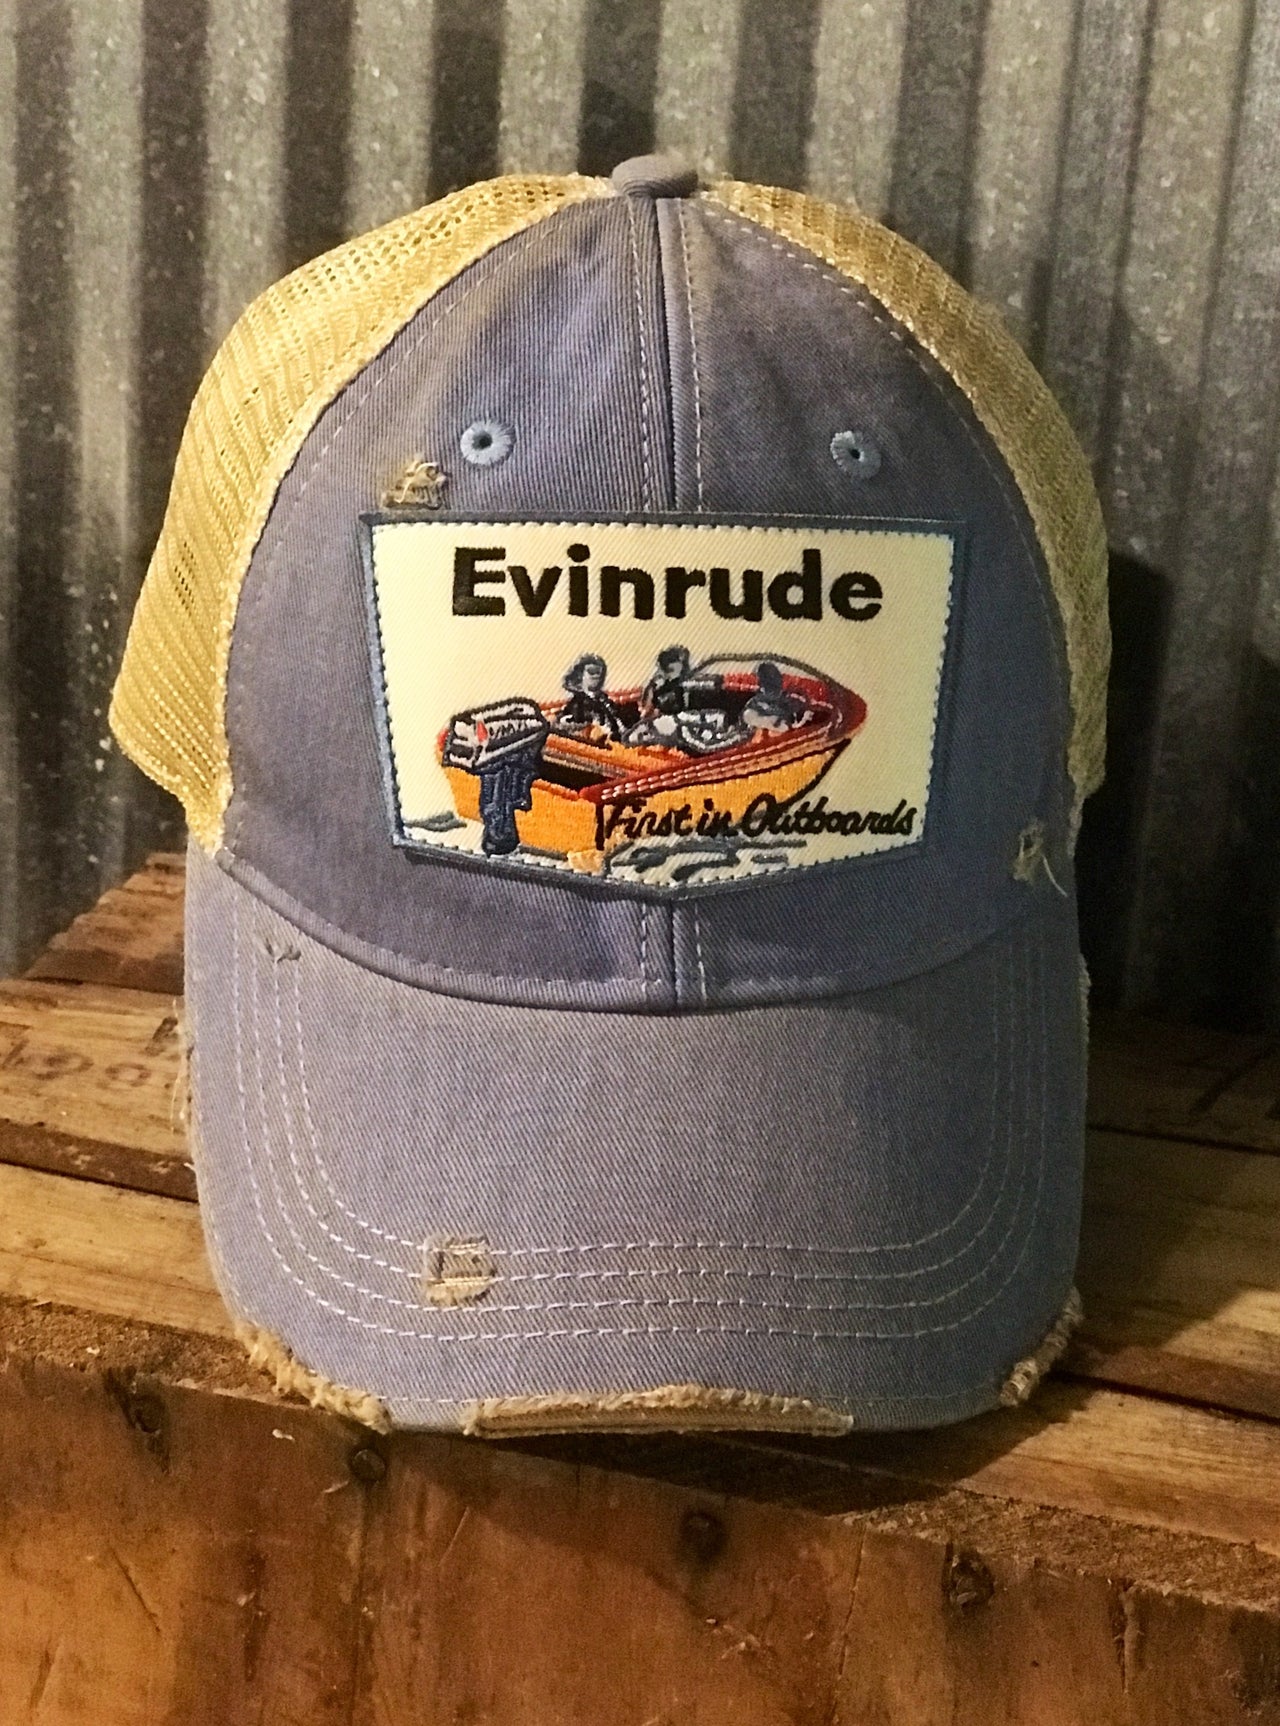 Grandpa Fishing Hats & Caps